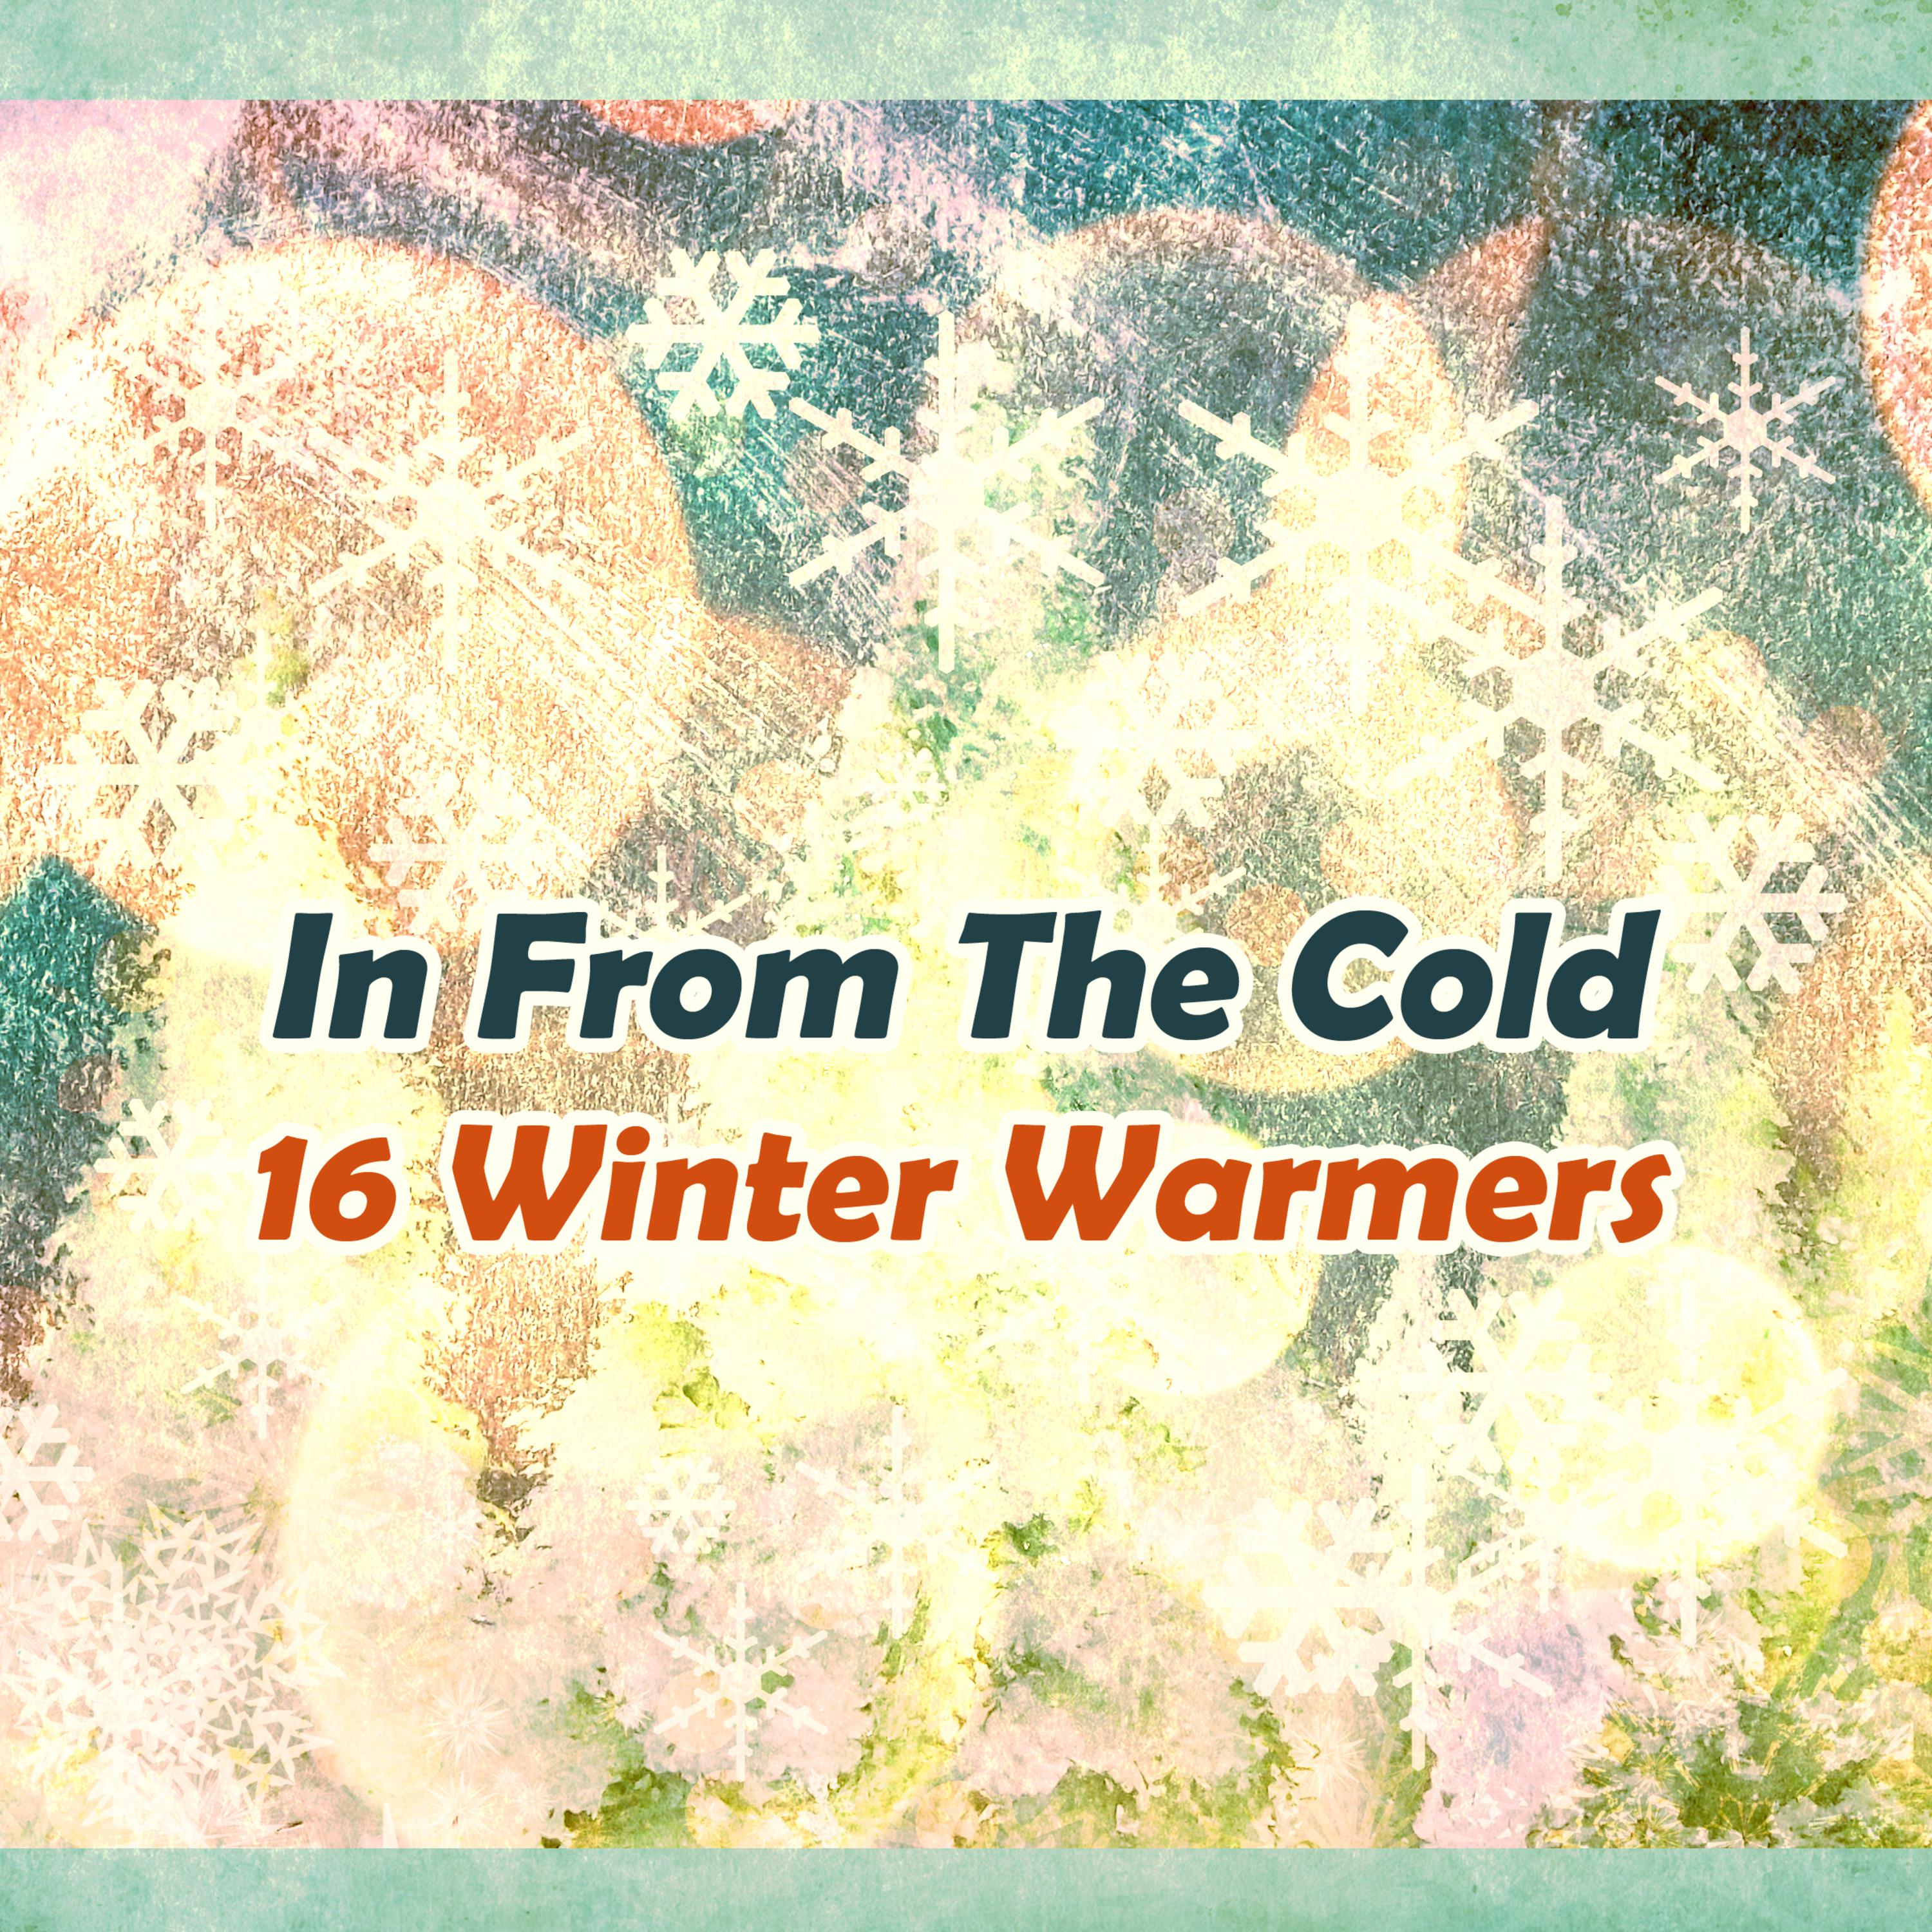 16 Winter Warmers